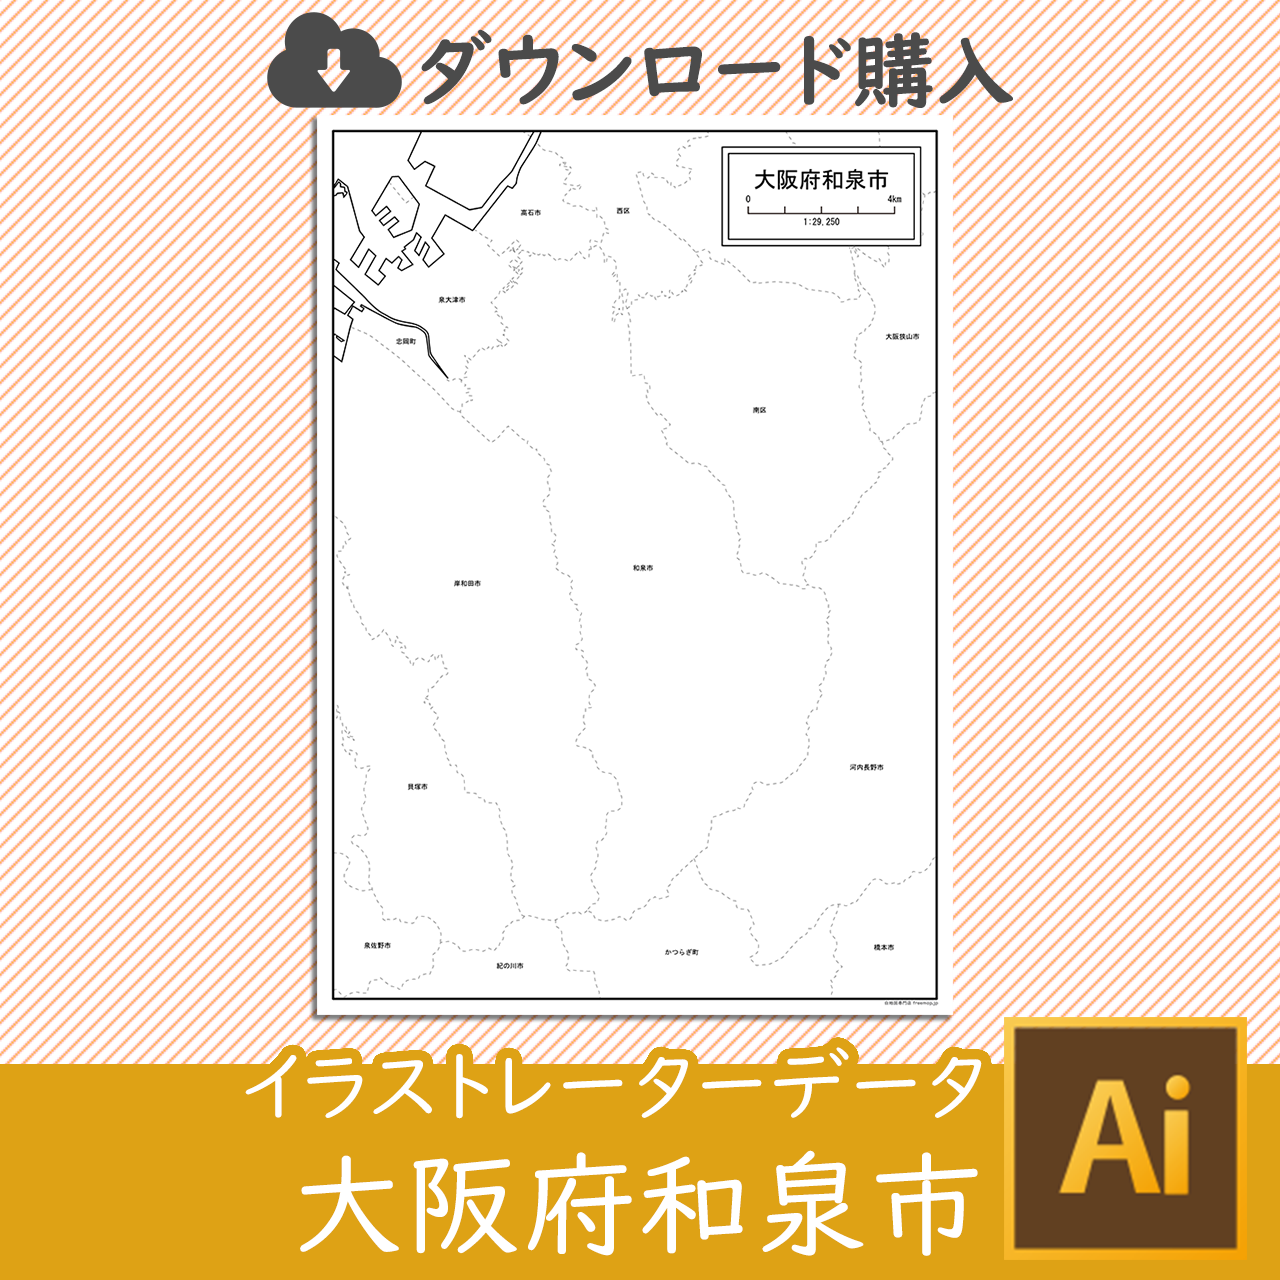 和泉市のaiデータのサムネイル画像